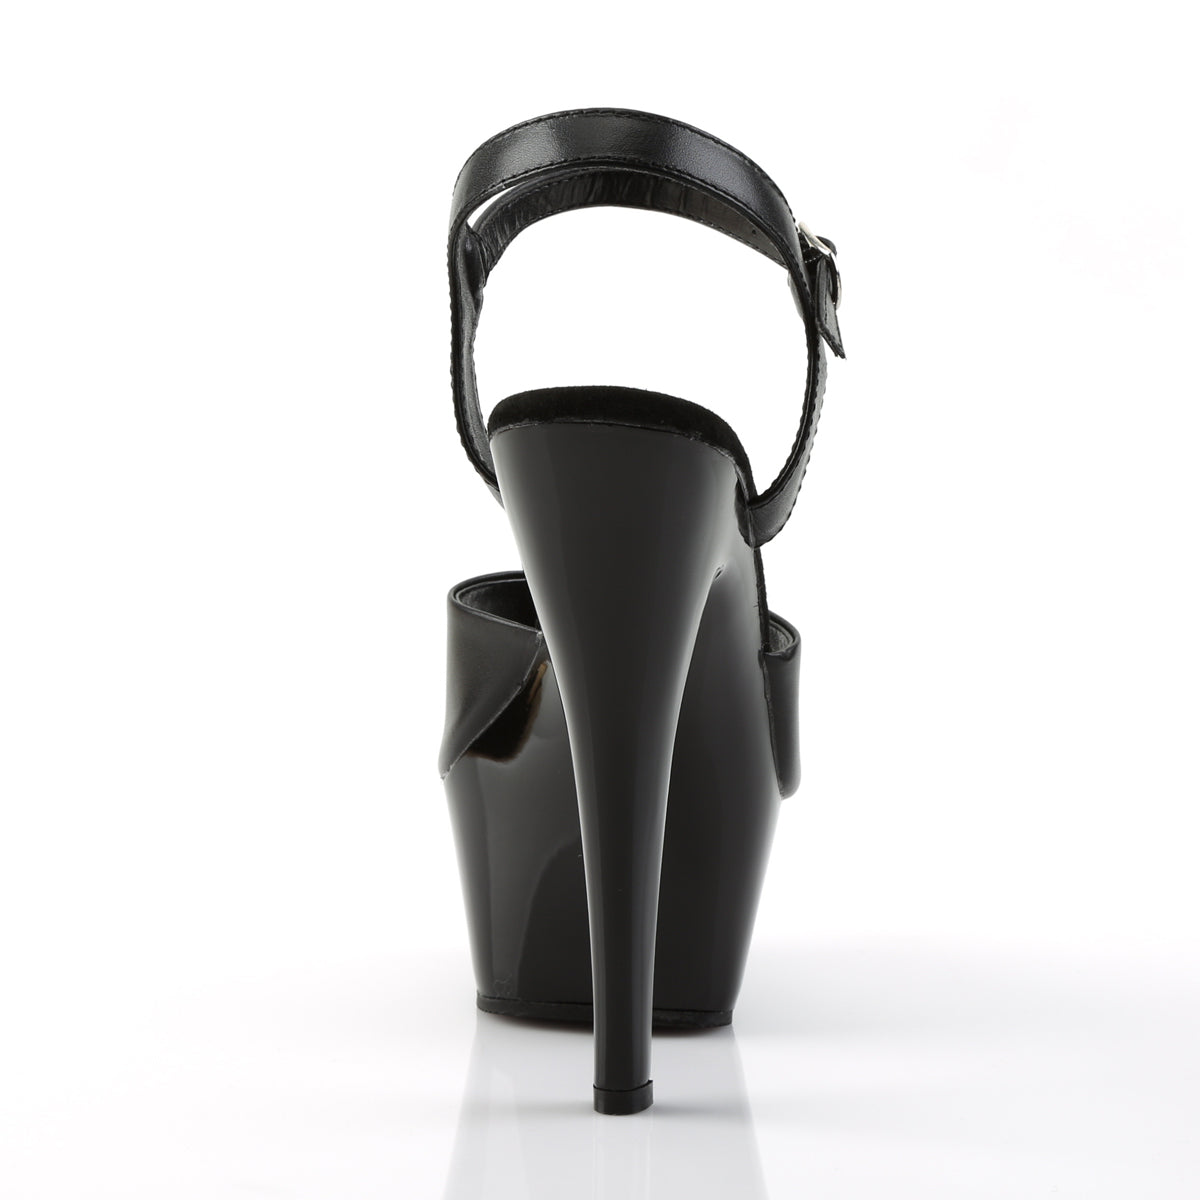 KISS-209 Black Leather/Black Platform Sandal Pleaser